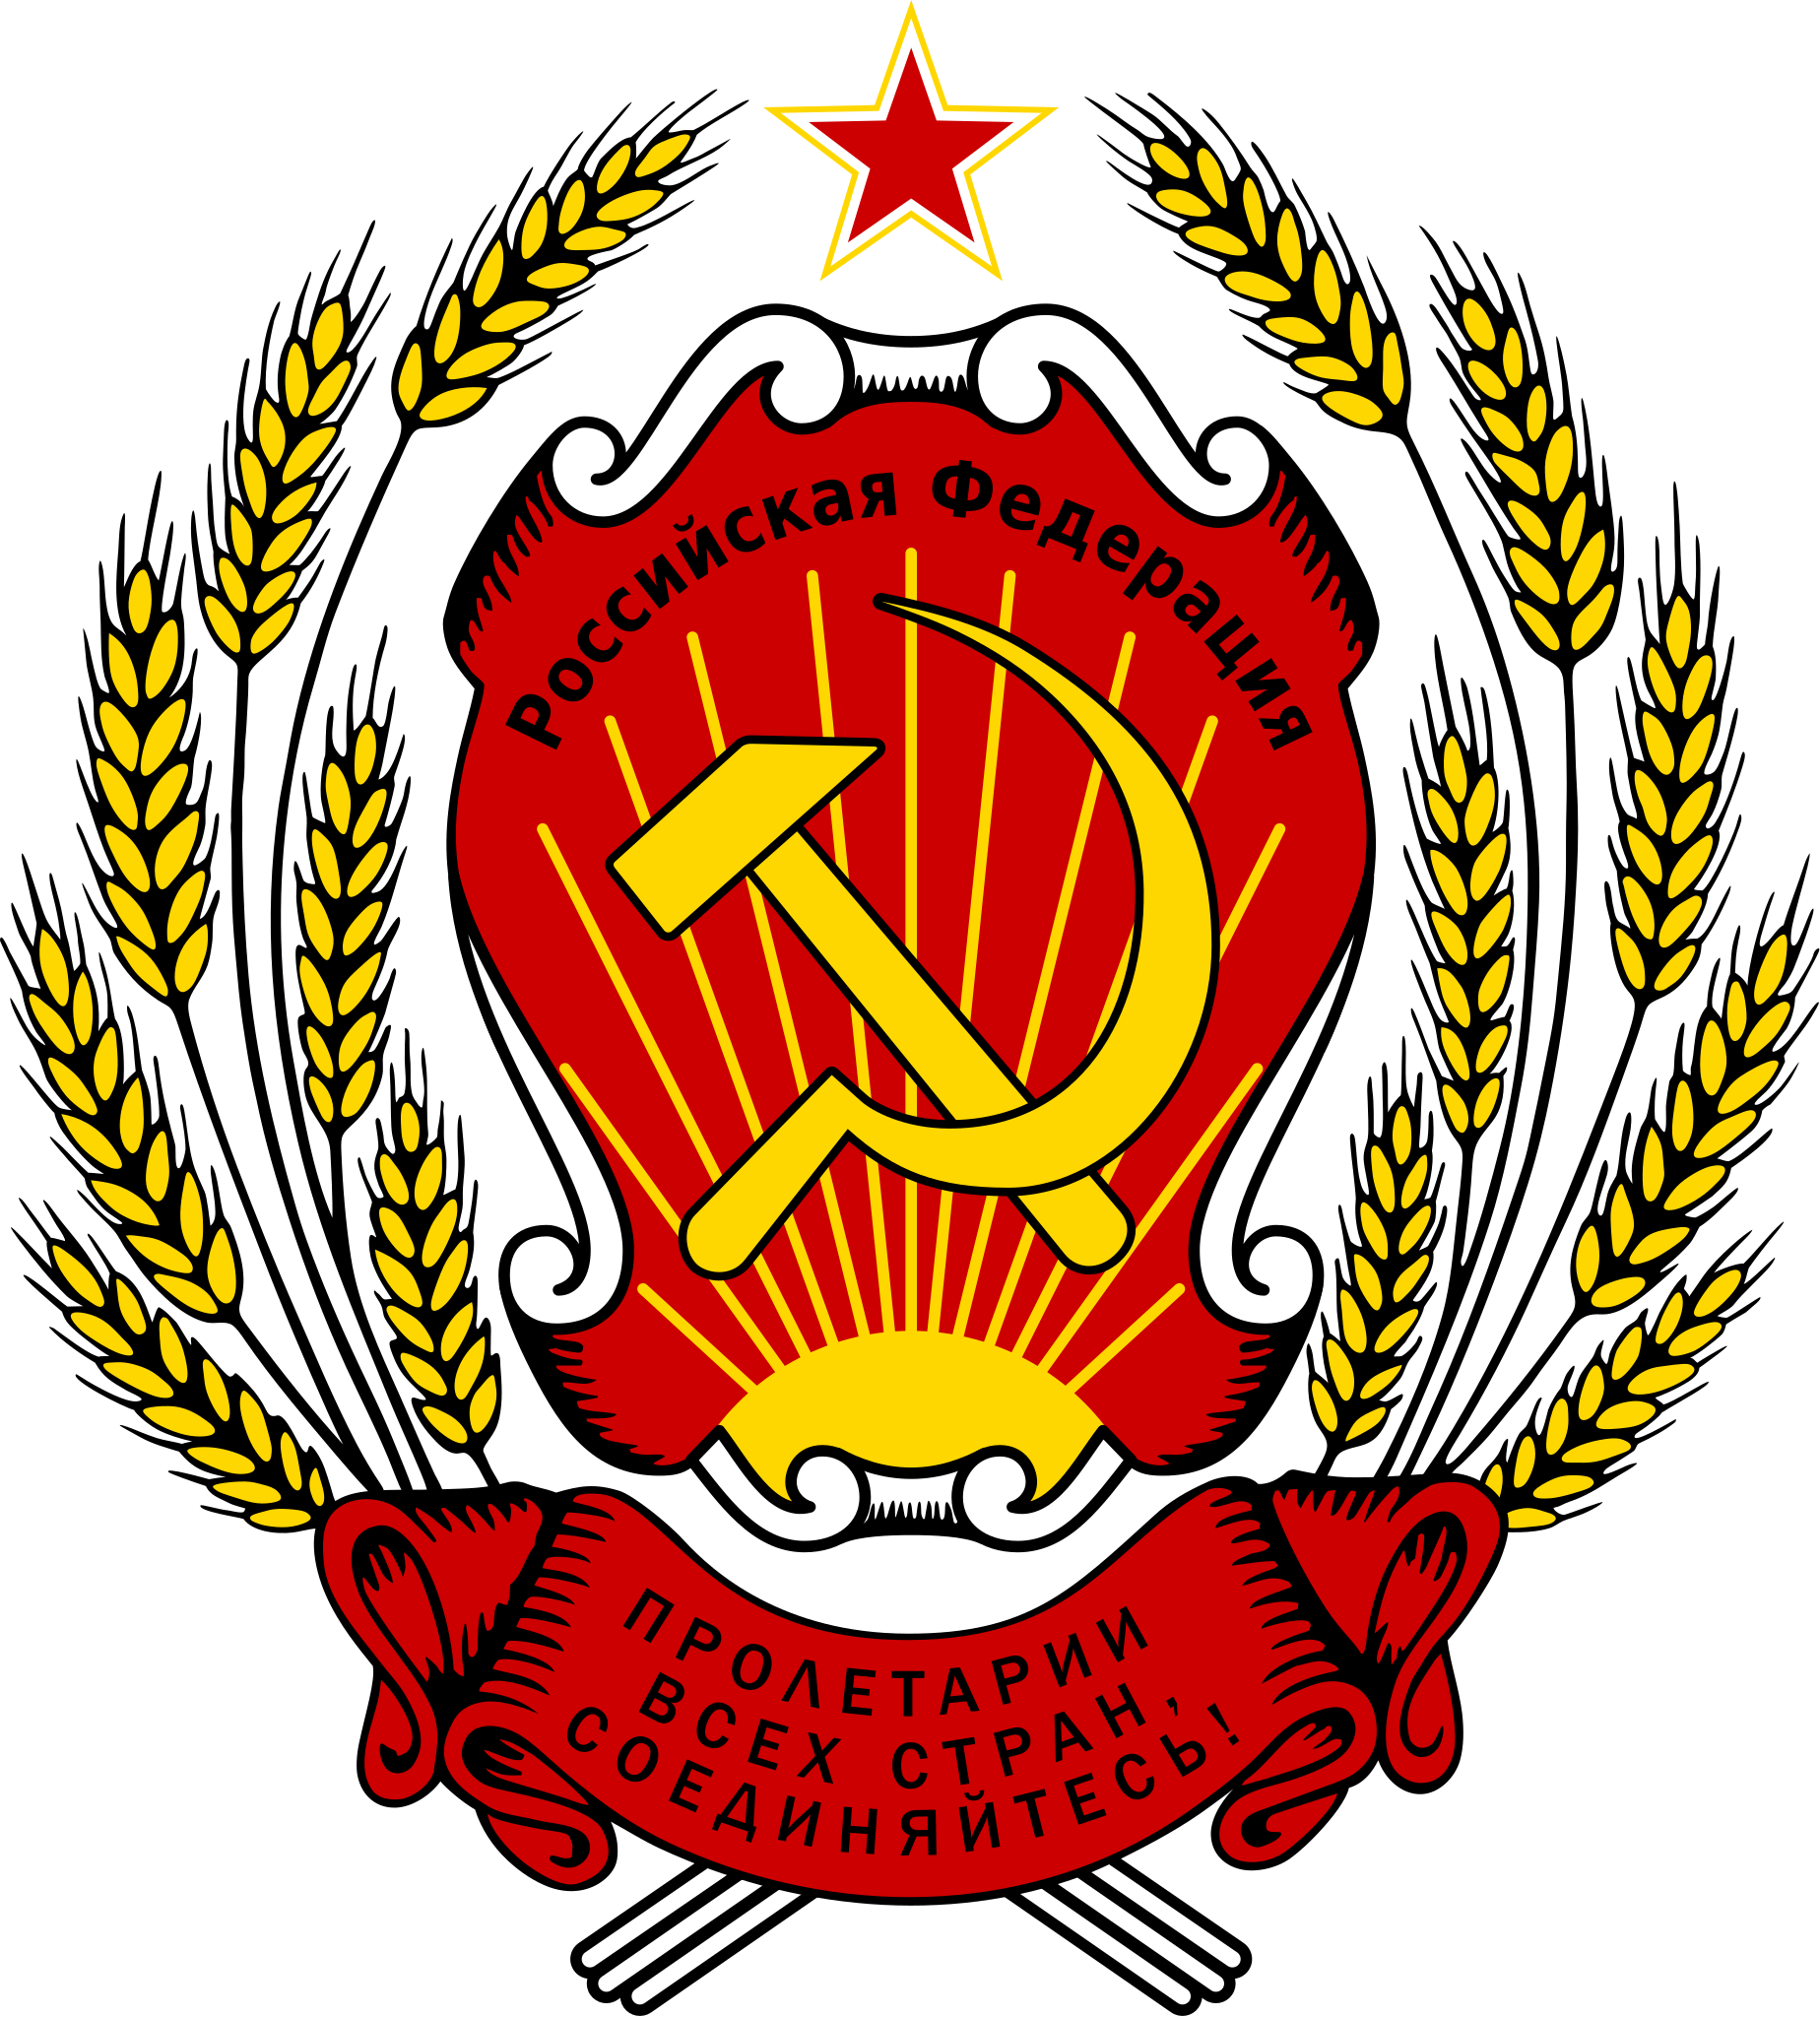 俄罗斯国国徽图片